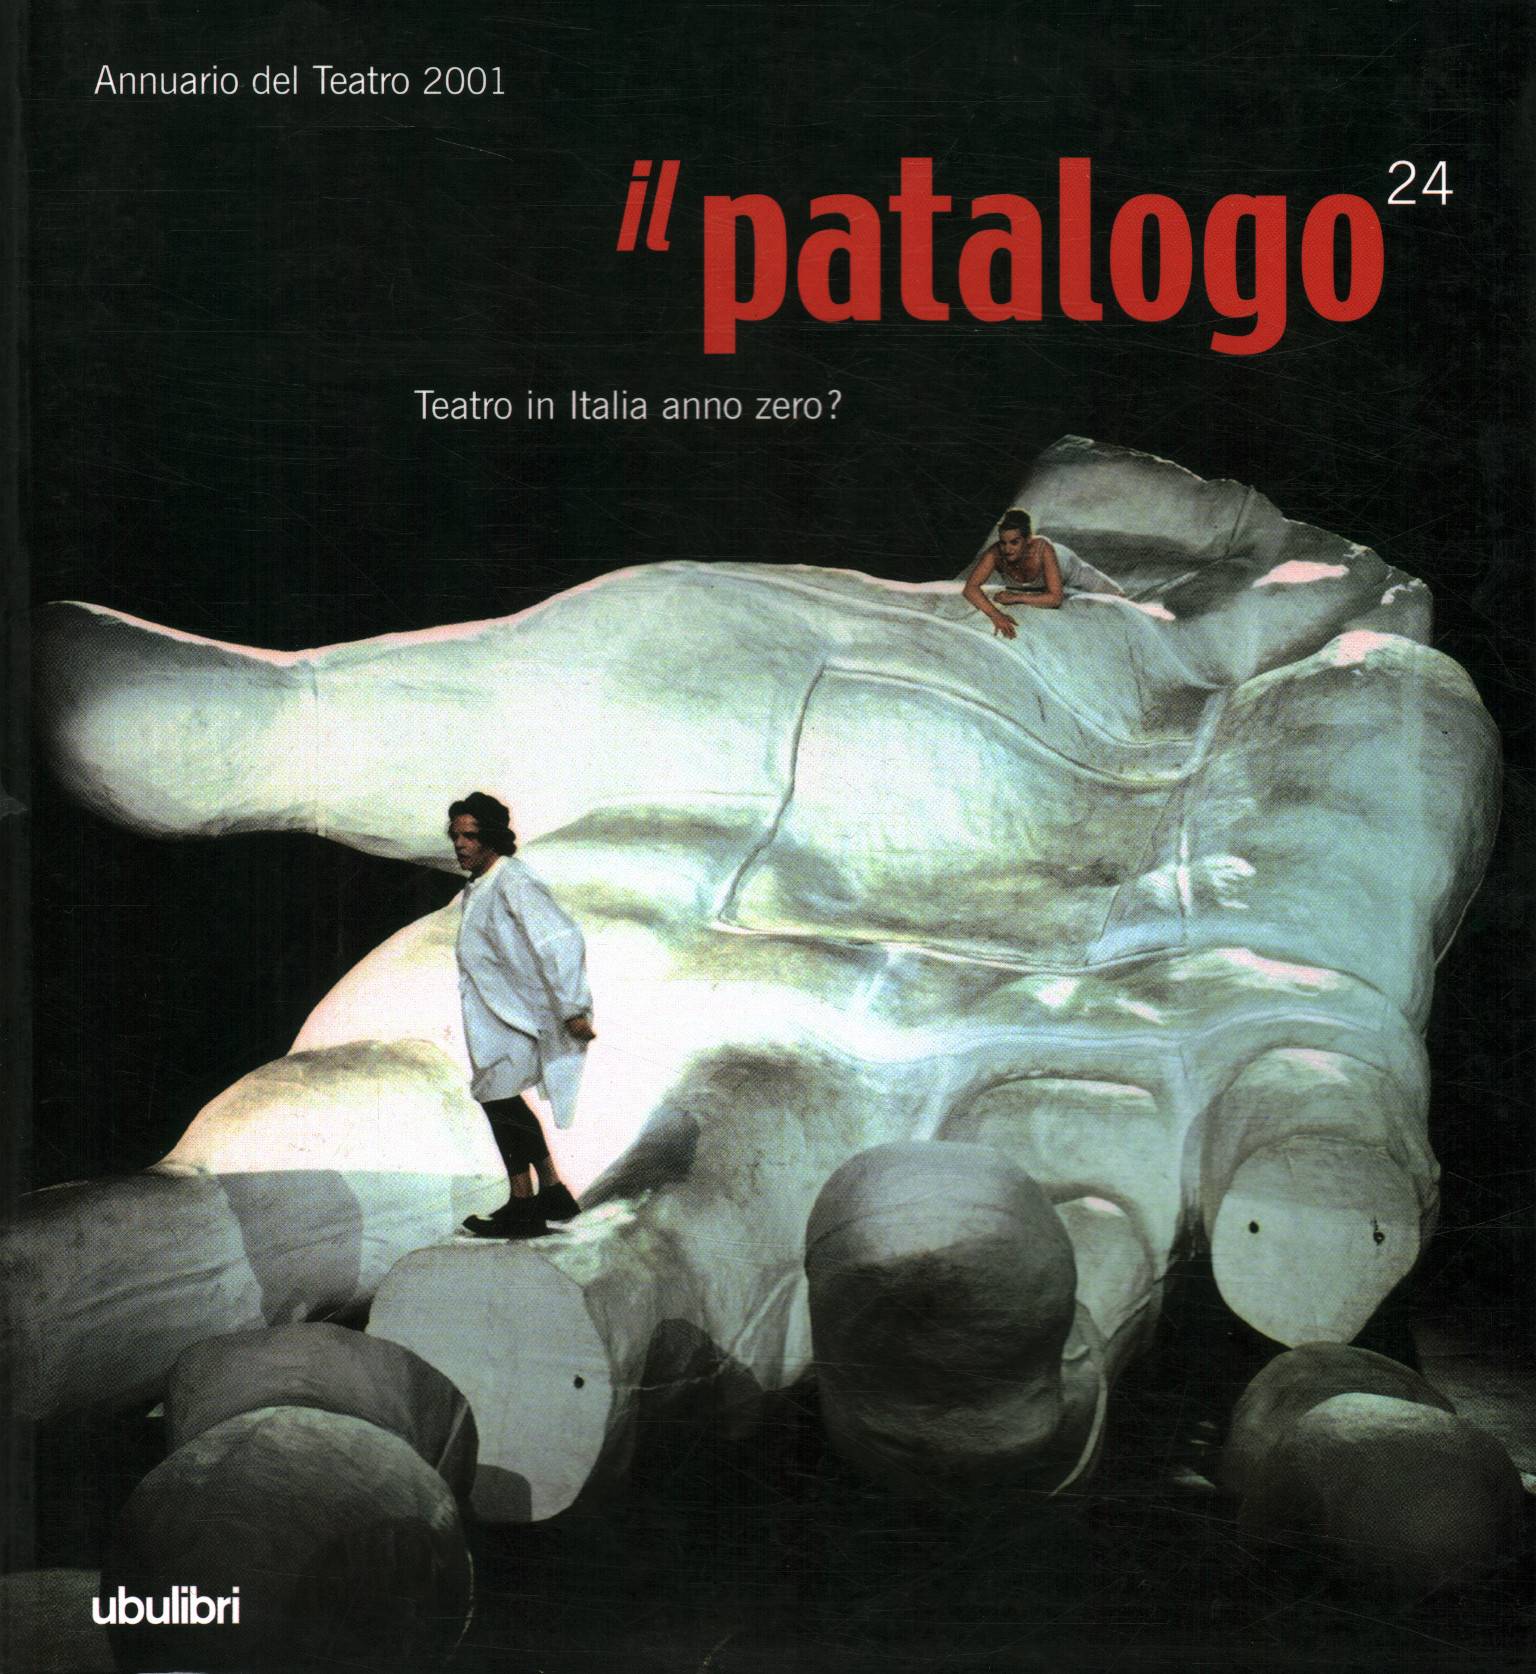 Il Patologo 24. Théâtre en Italie année%, Il Patalogo 24. Théâtre en Italie année%, Il Patalogo vingt-quatre. Théâtre en Italie